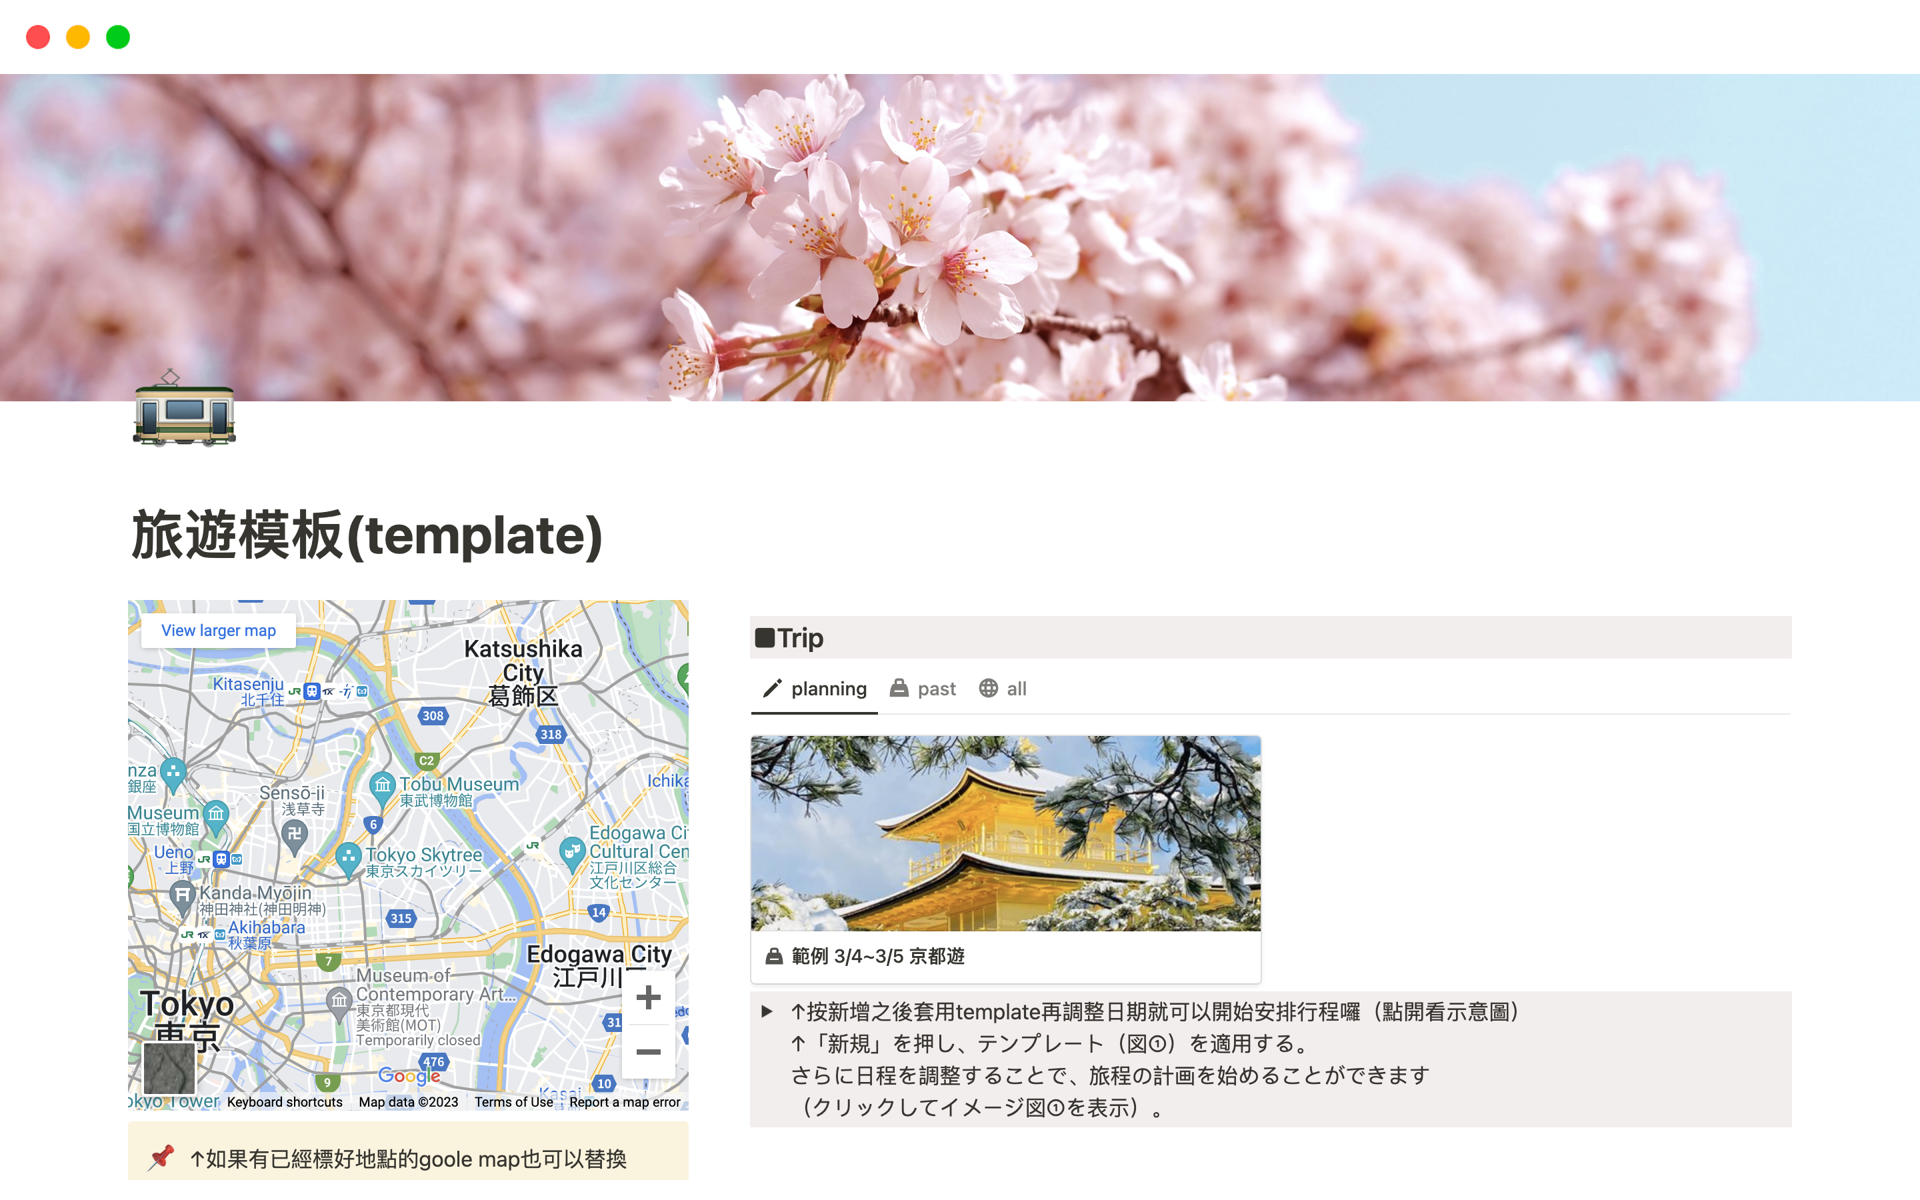 En förhandsgranskning av mallen för 旅遊模板(template)